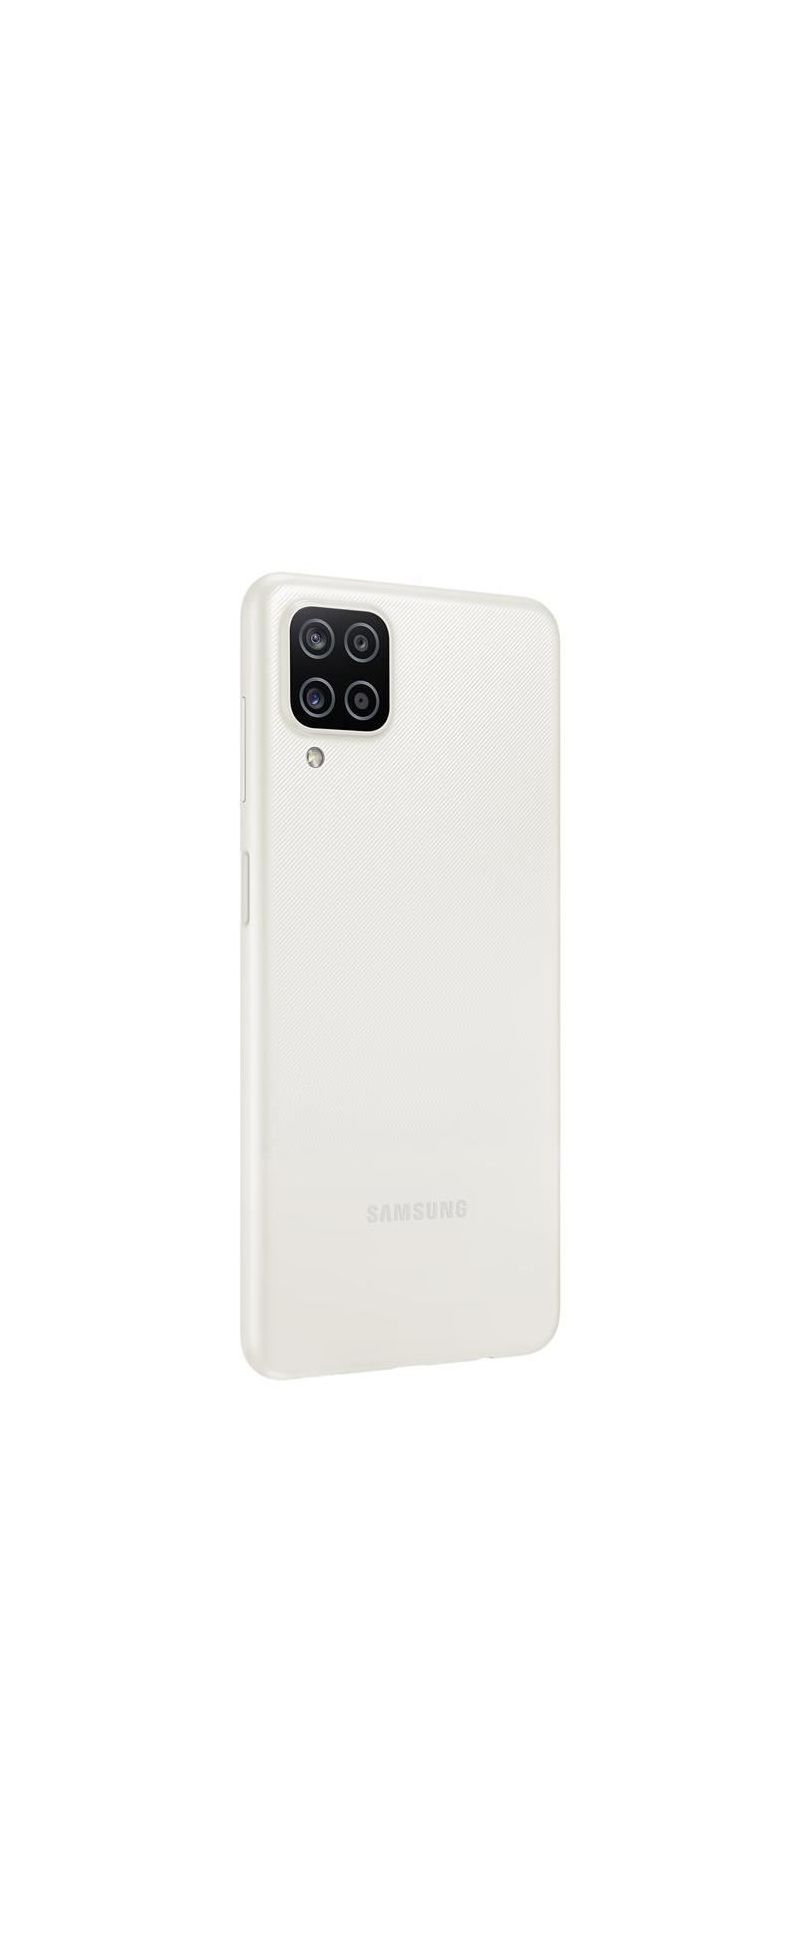 Samsung Galaxy A12 A127F EU 3/32GB, Android, white